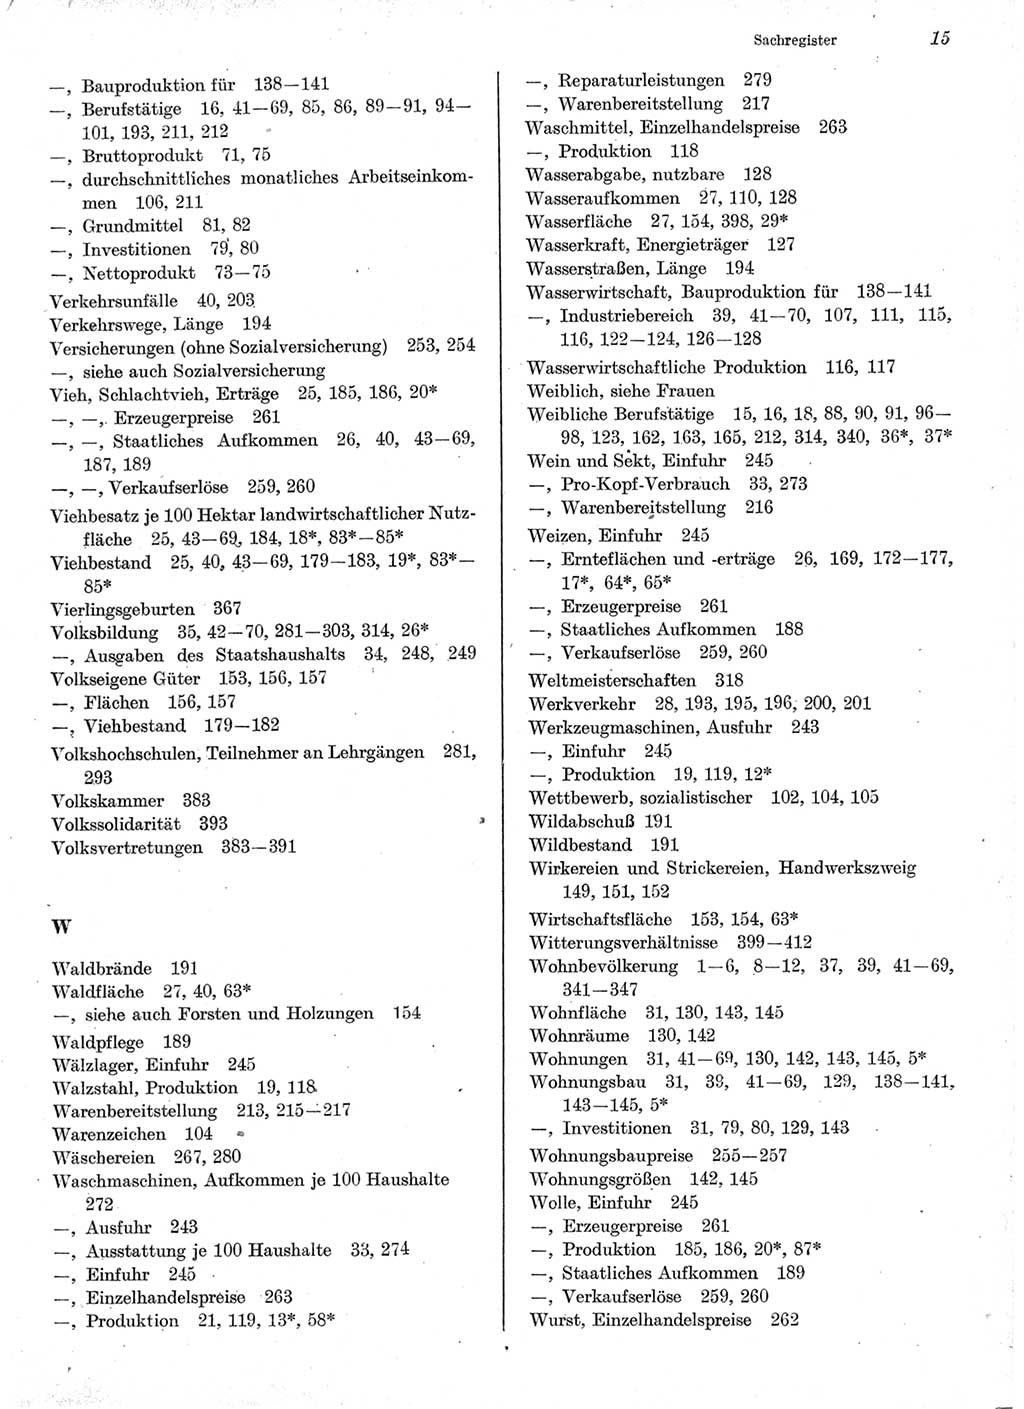 Statistisches Jahrbuch der Deutschen Demokratischen Republik (DDR) 1978, Seite 15 (Stat. Jb. DDR 1978, S. 15)